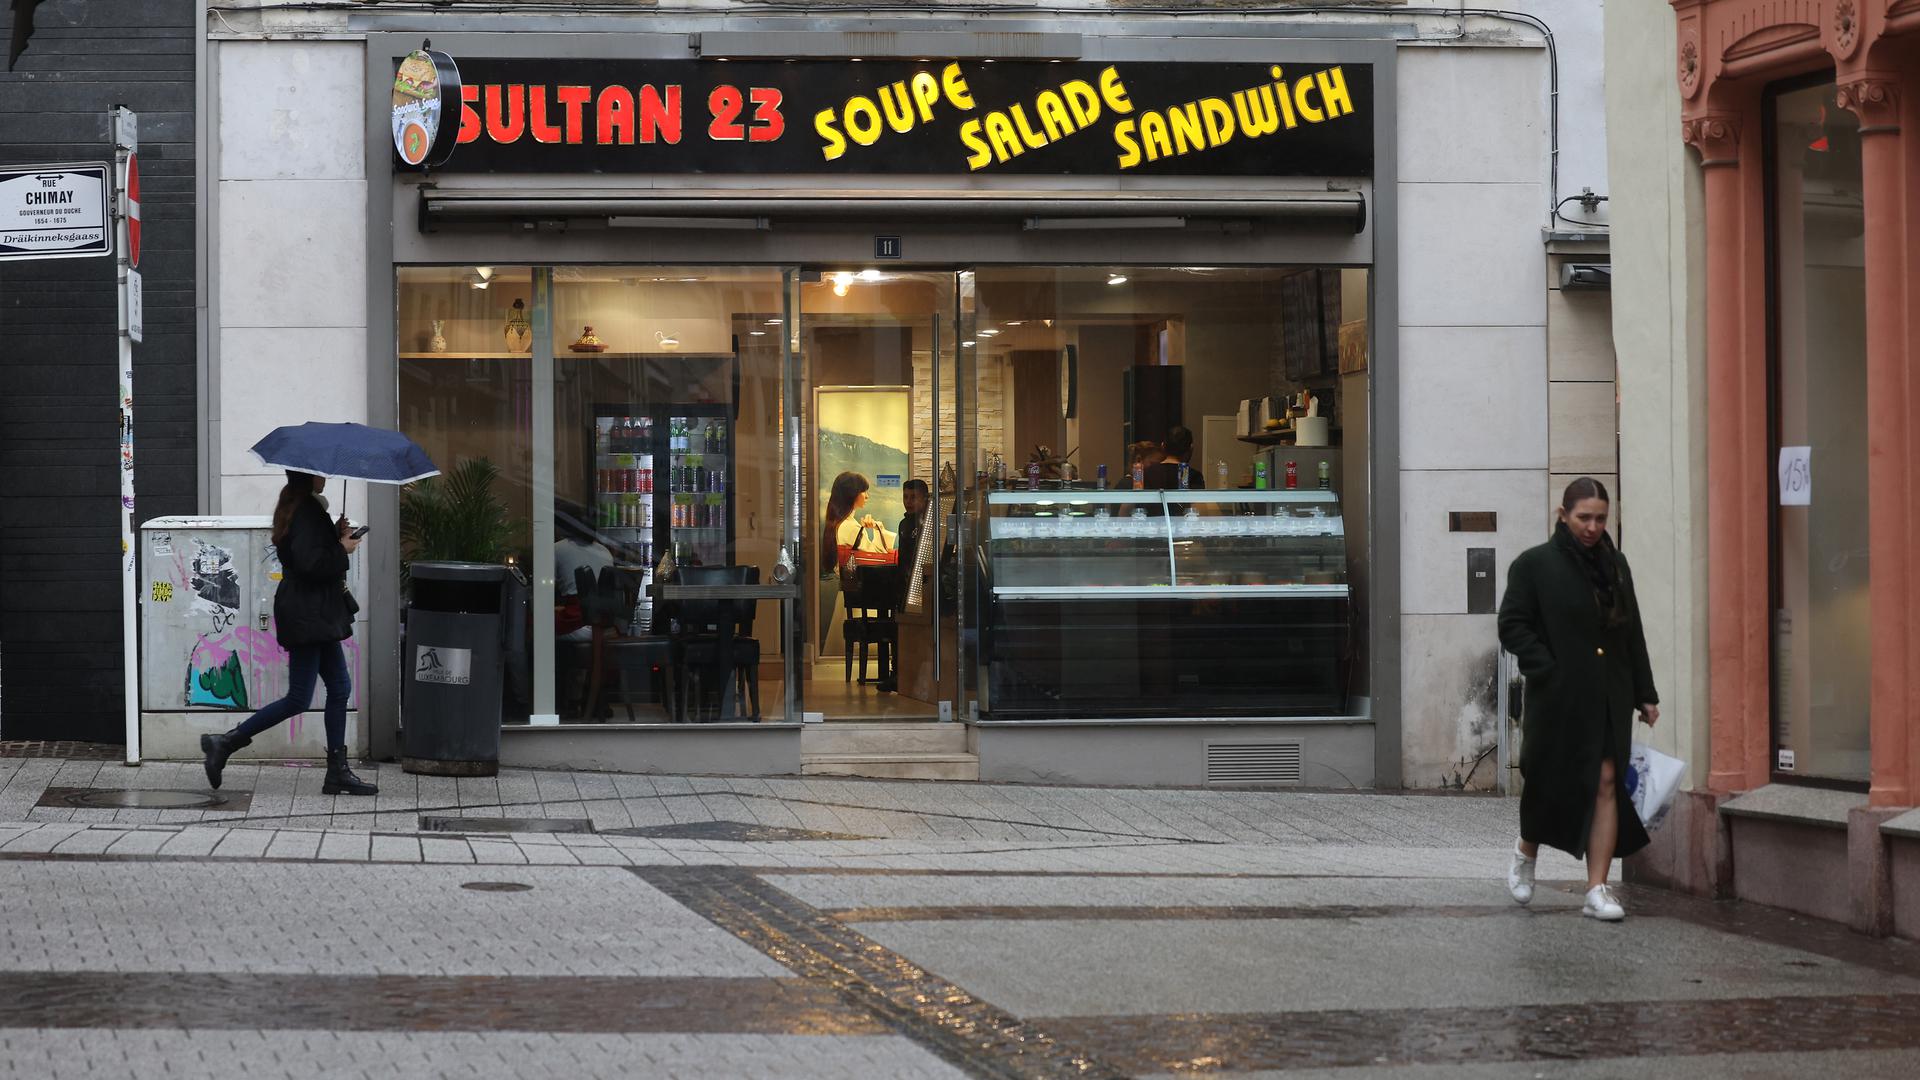 Sultan 23 dans la rue Chimay est une succursale du Snack Istanbul voisin.